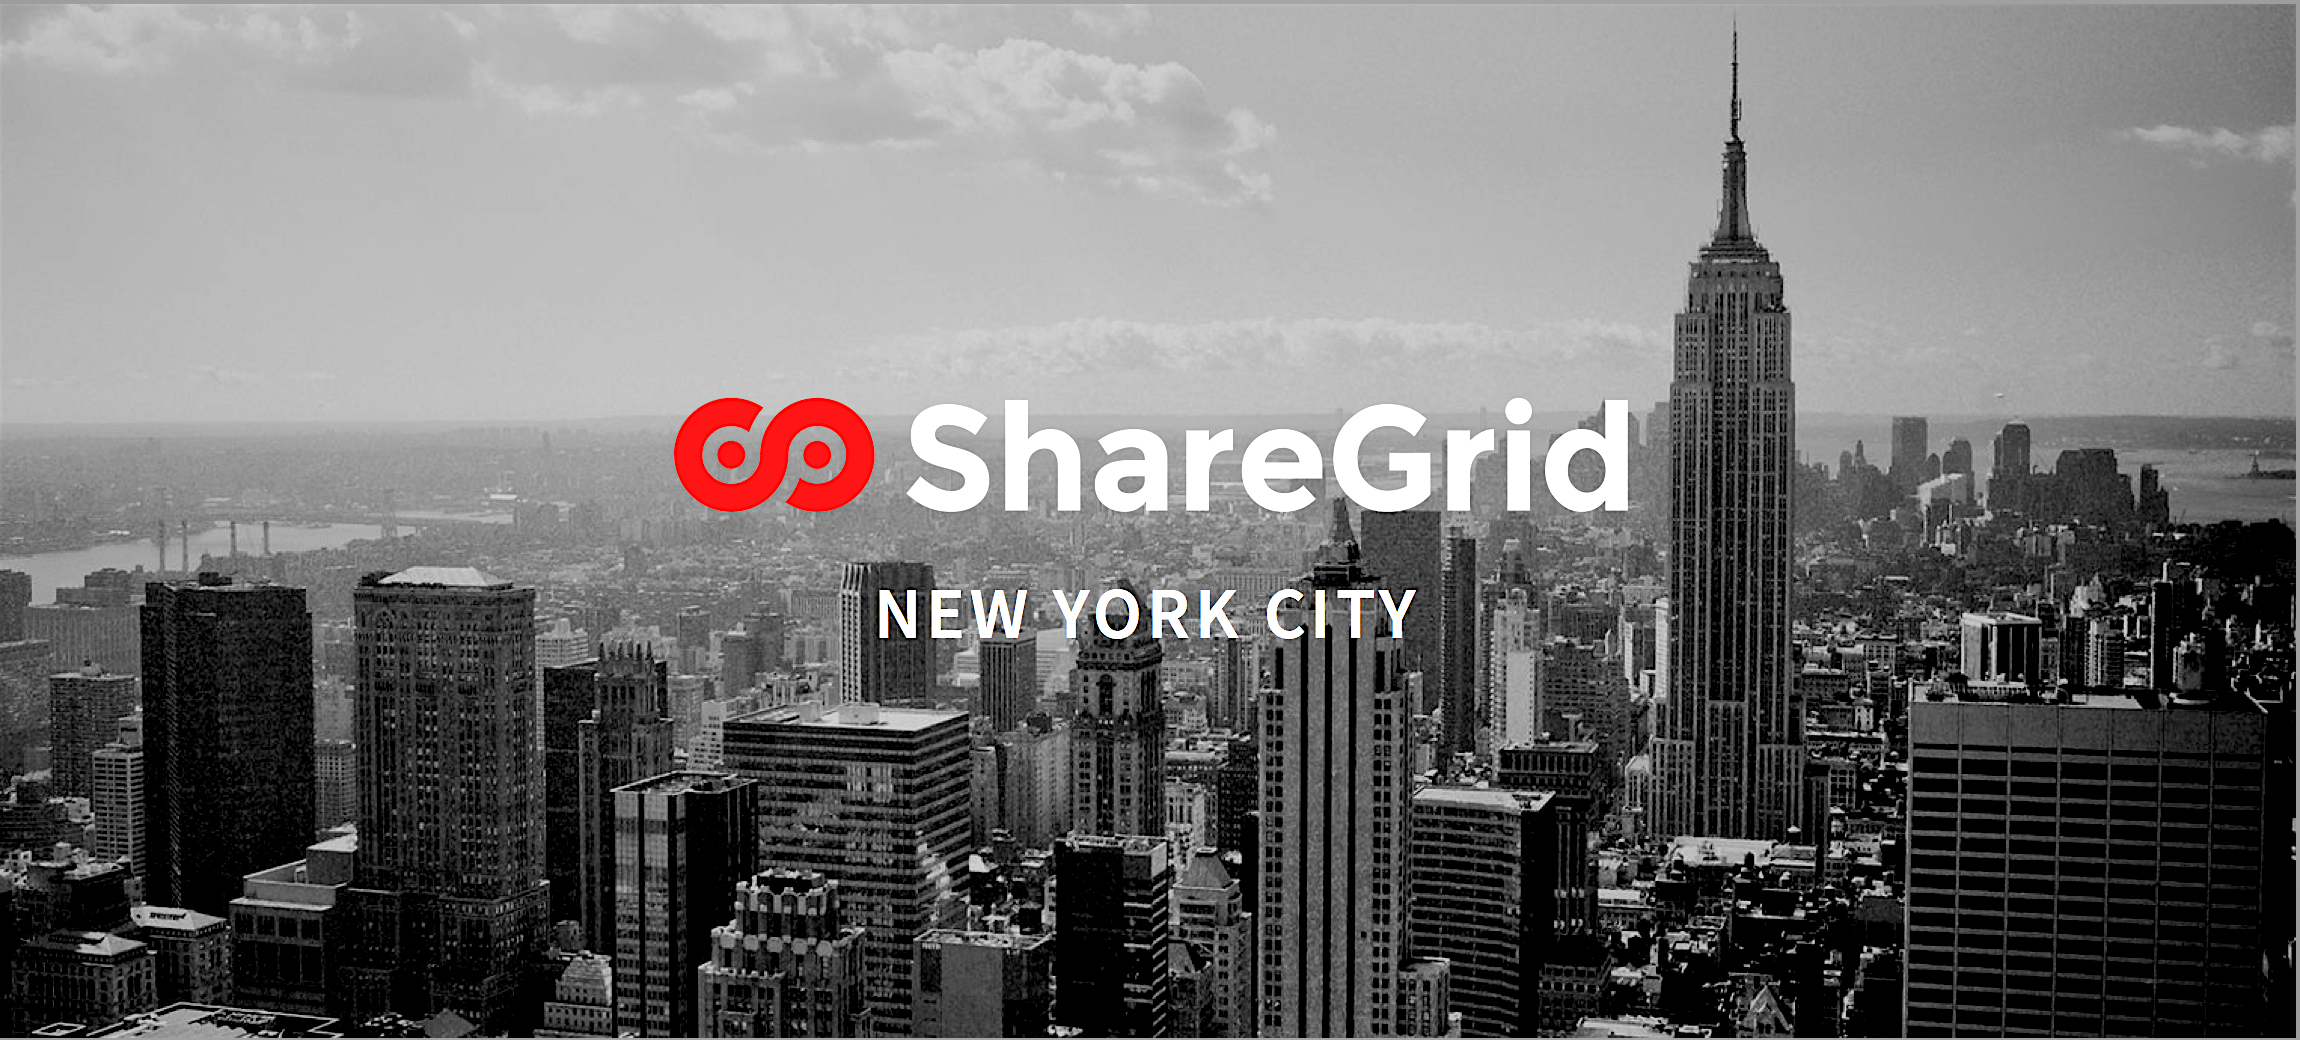 ShareGrid New York City 